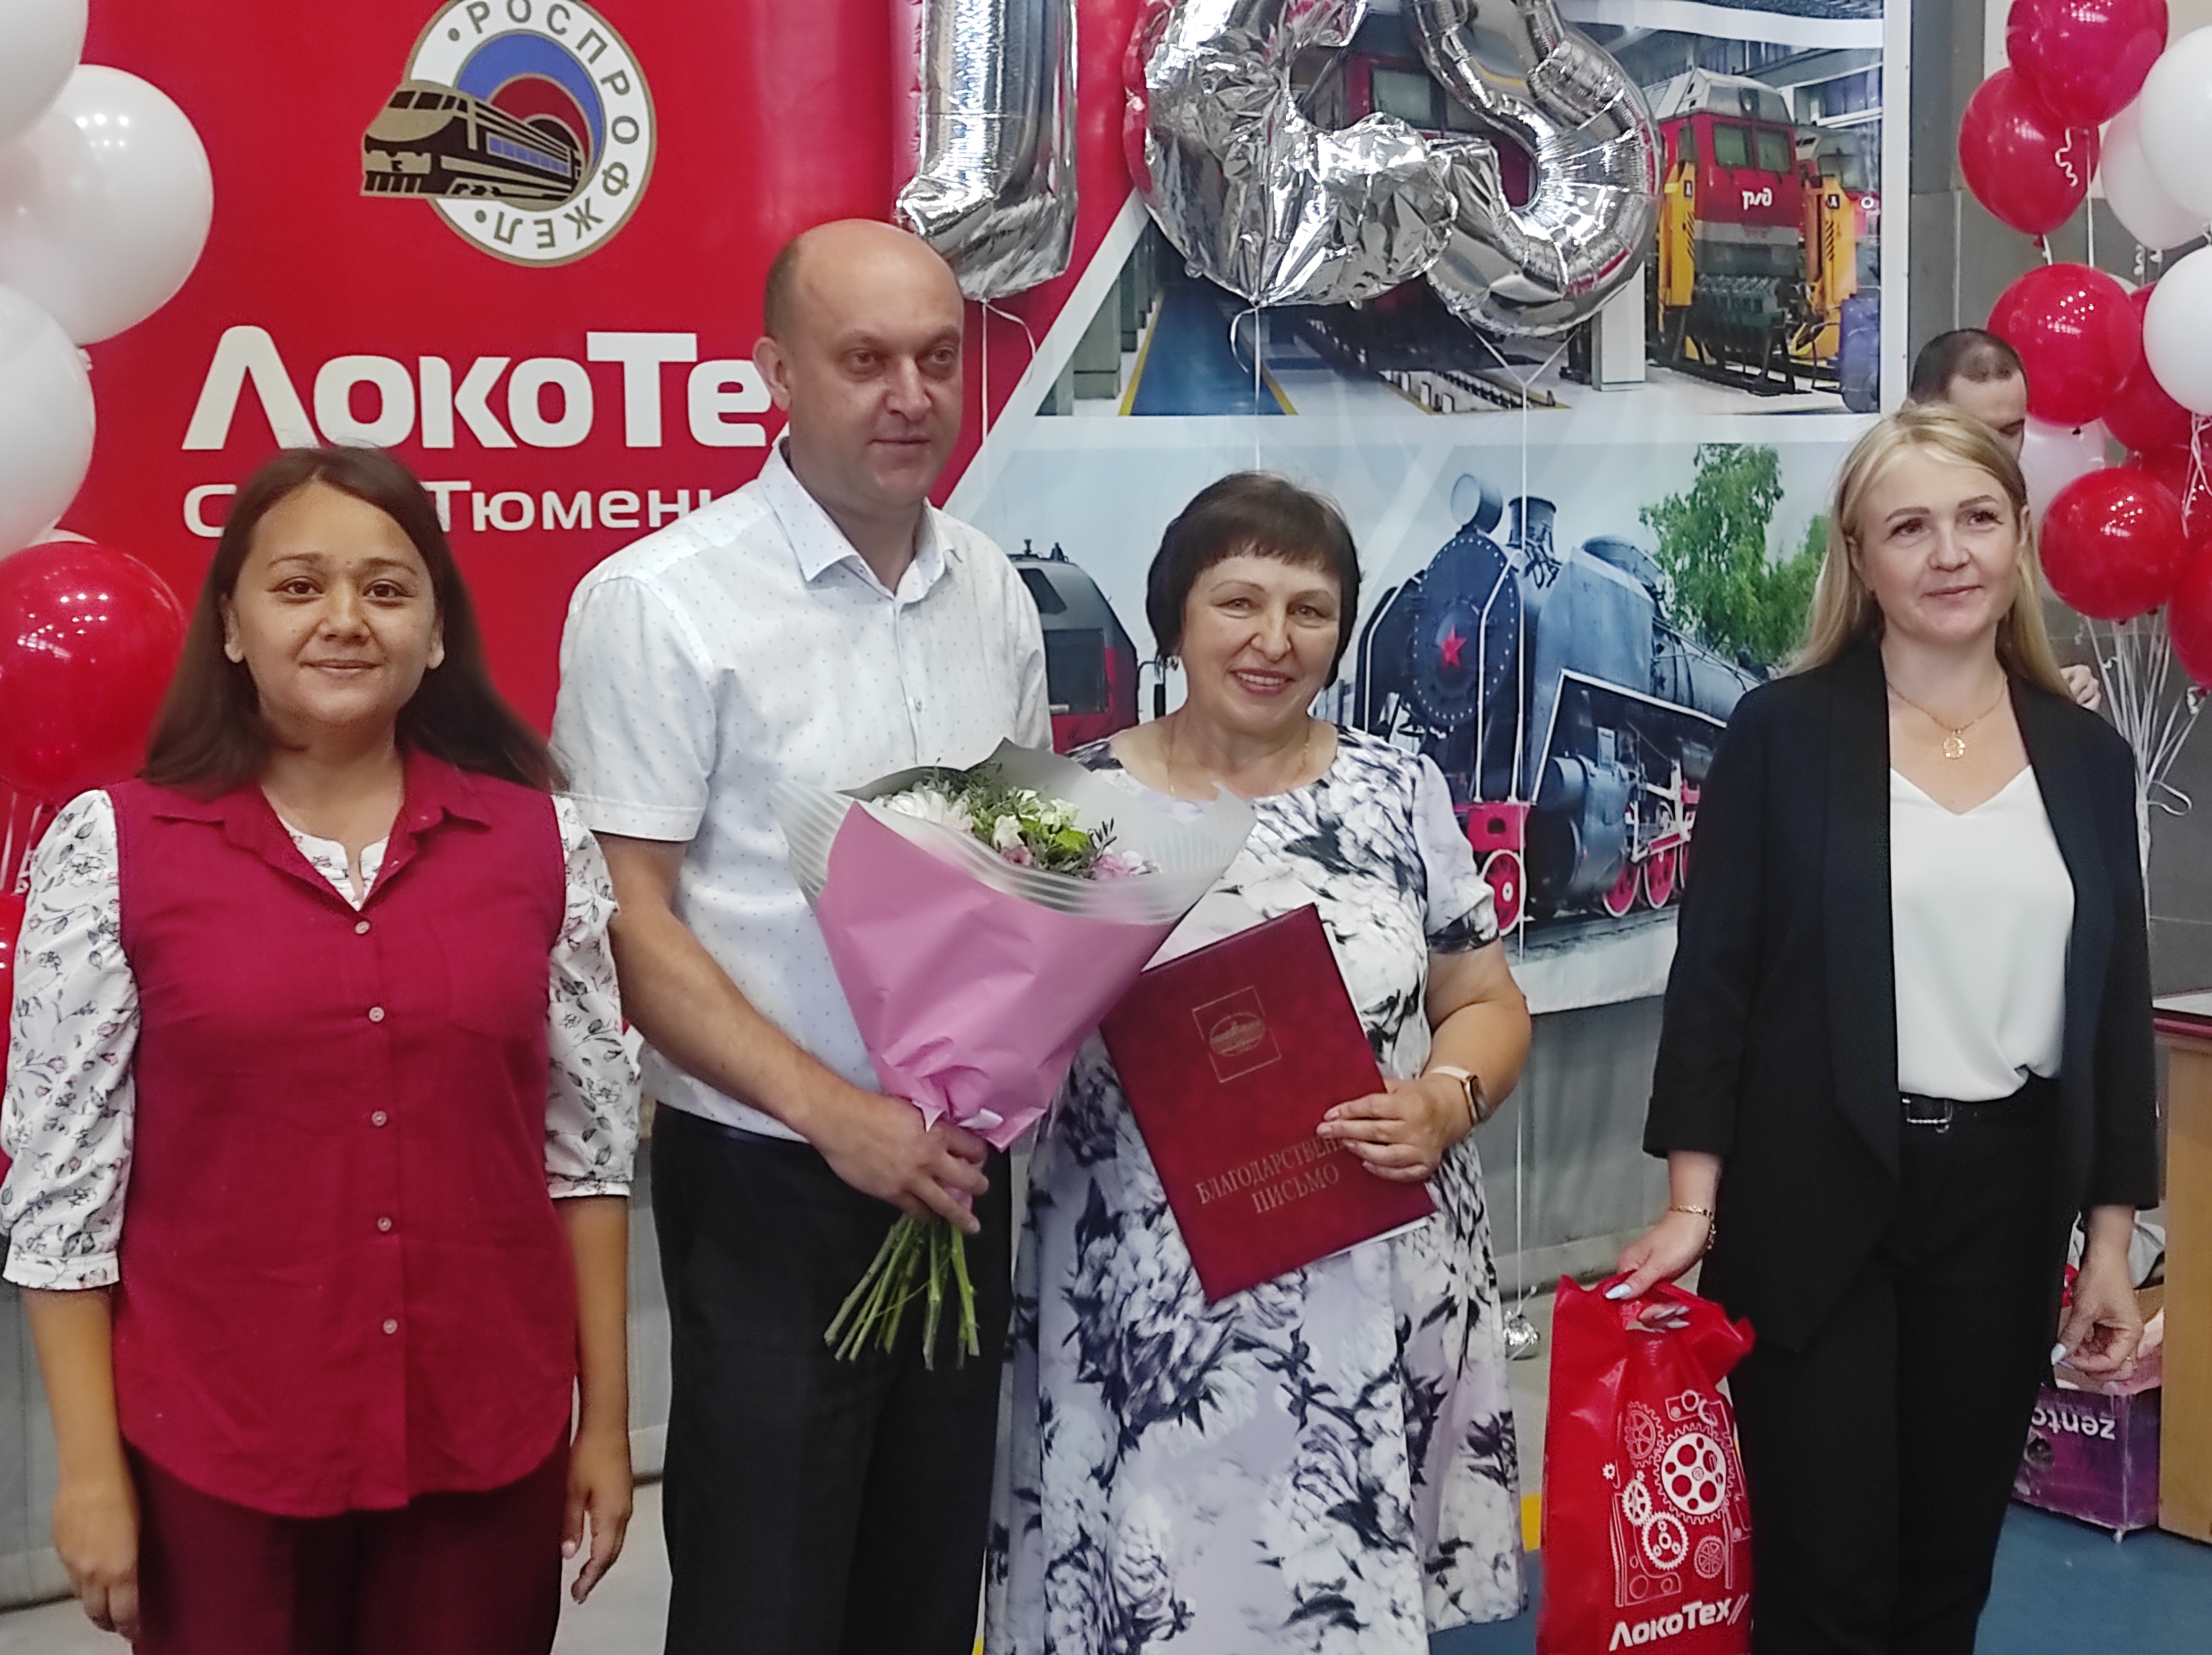 Регина Юхневич поздравила железнодорожников с профессиональным праздником и со 135-летием образования локомотивного депо Тюмень